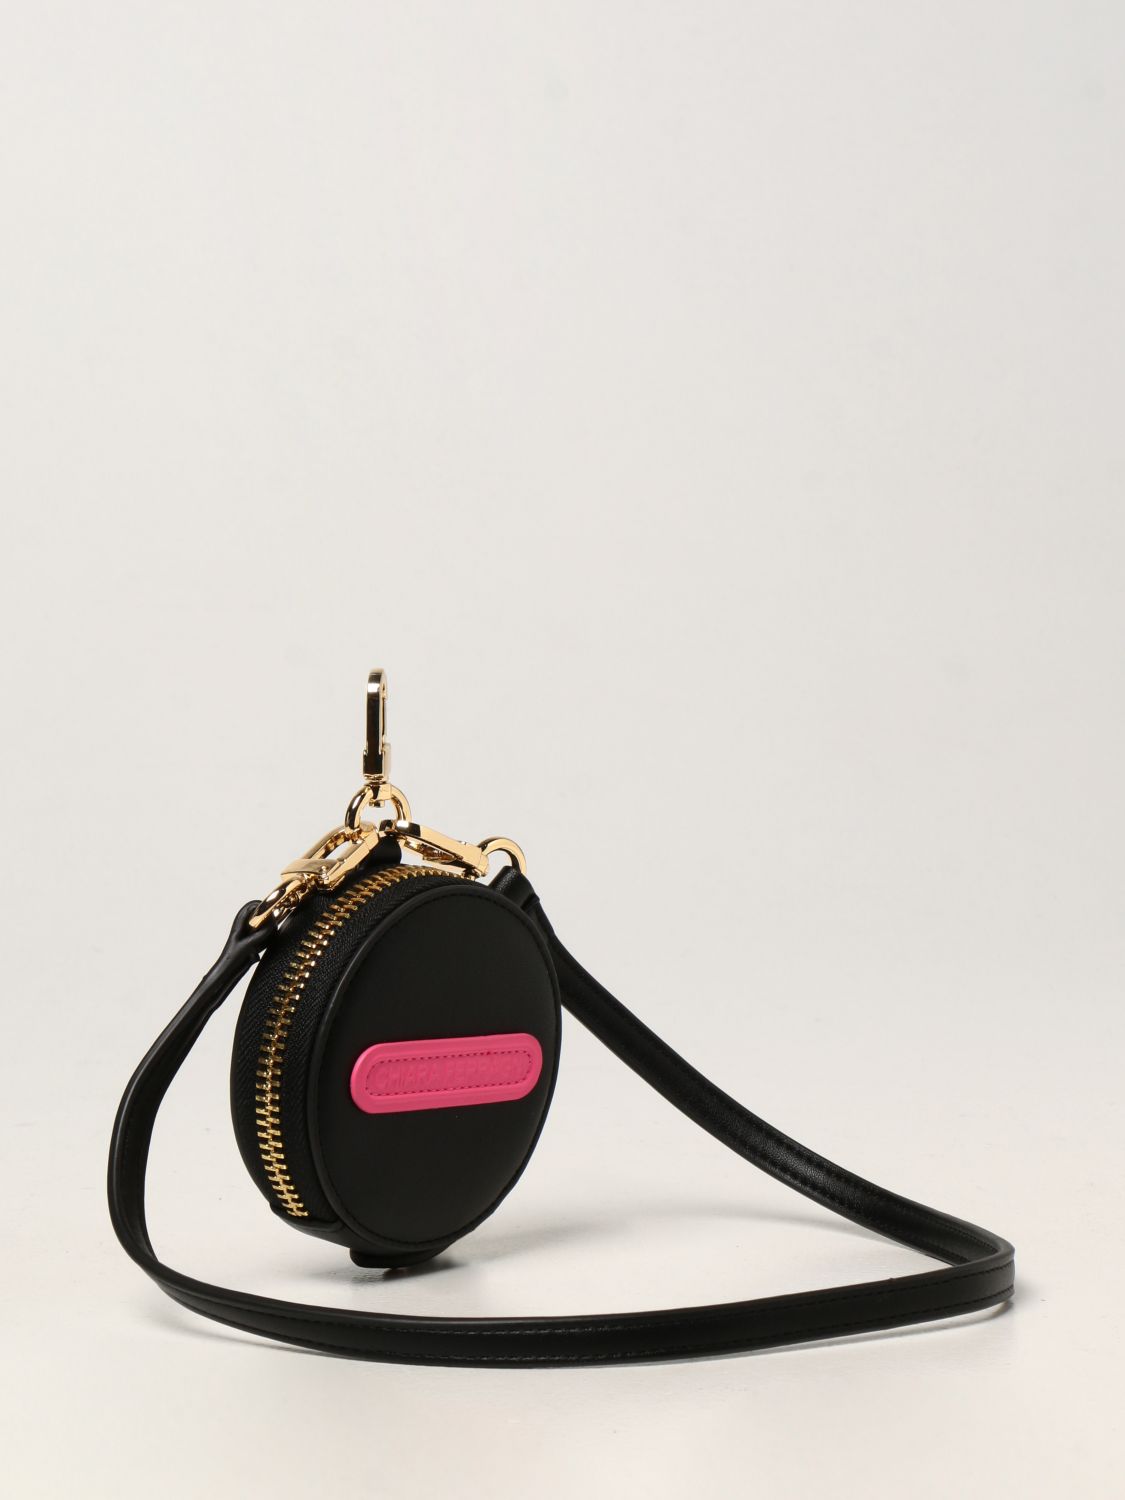 Chiara Ferragni Logo-appliqué Zip-fastening Wallet in Black